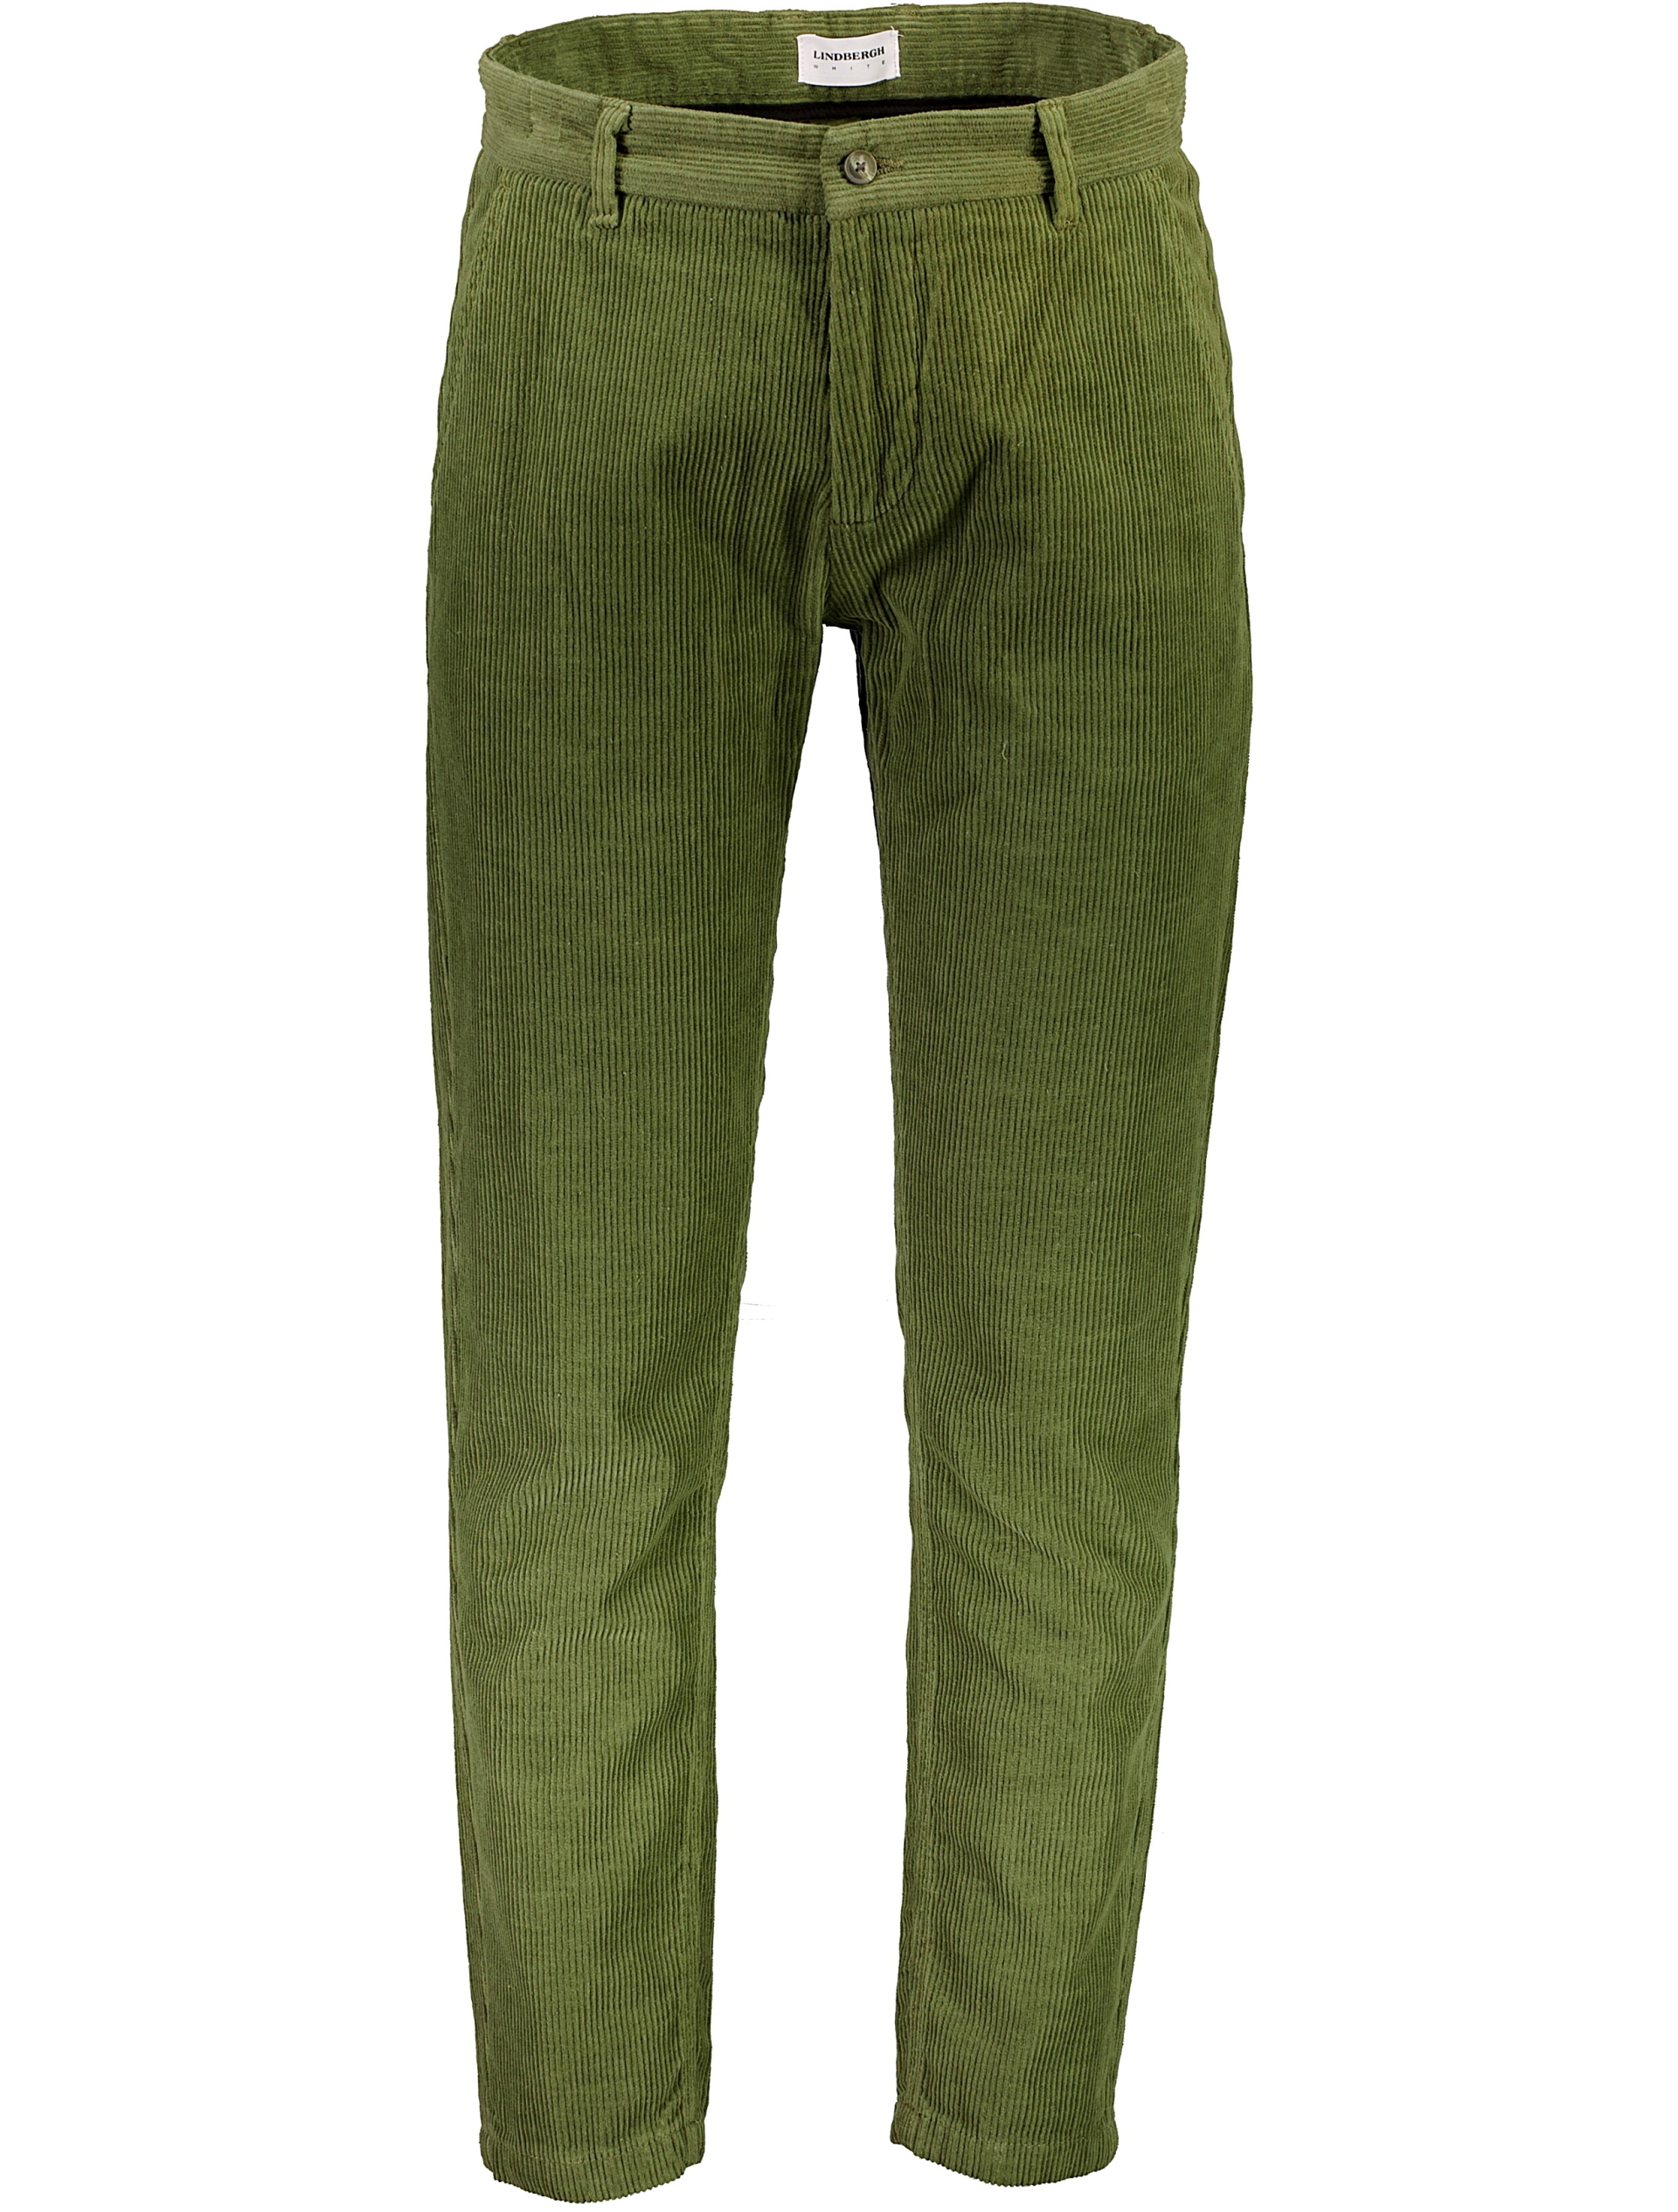 Lindbergh Klassiske bukser grøn / army